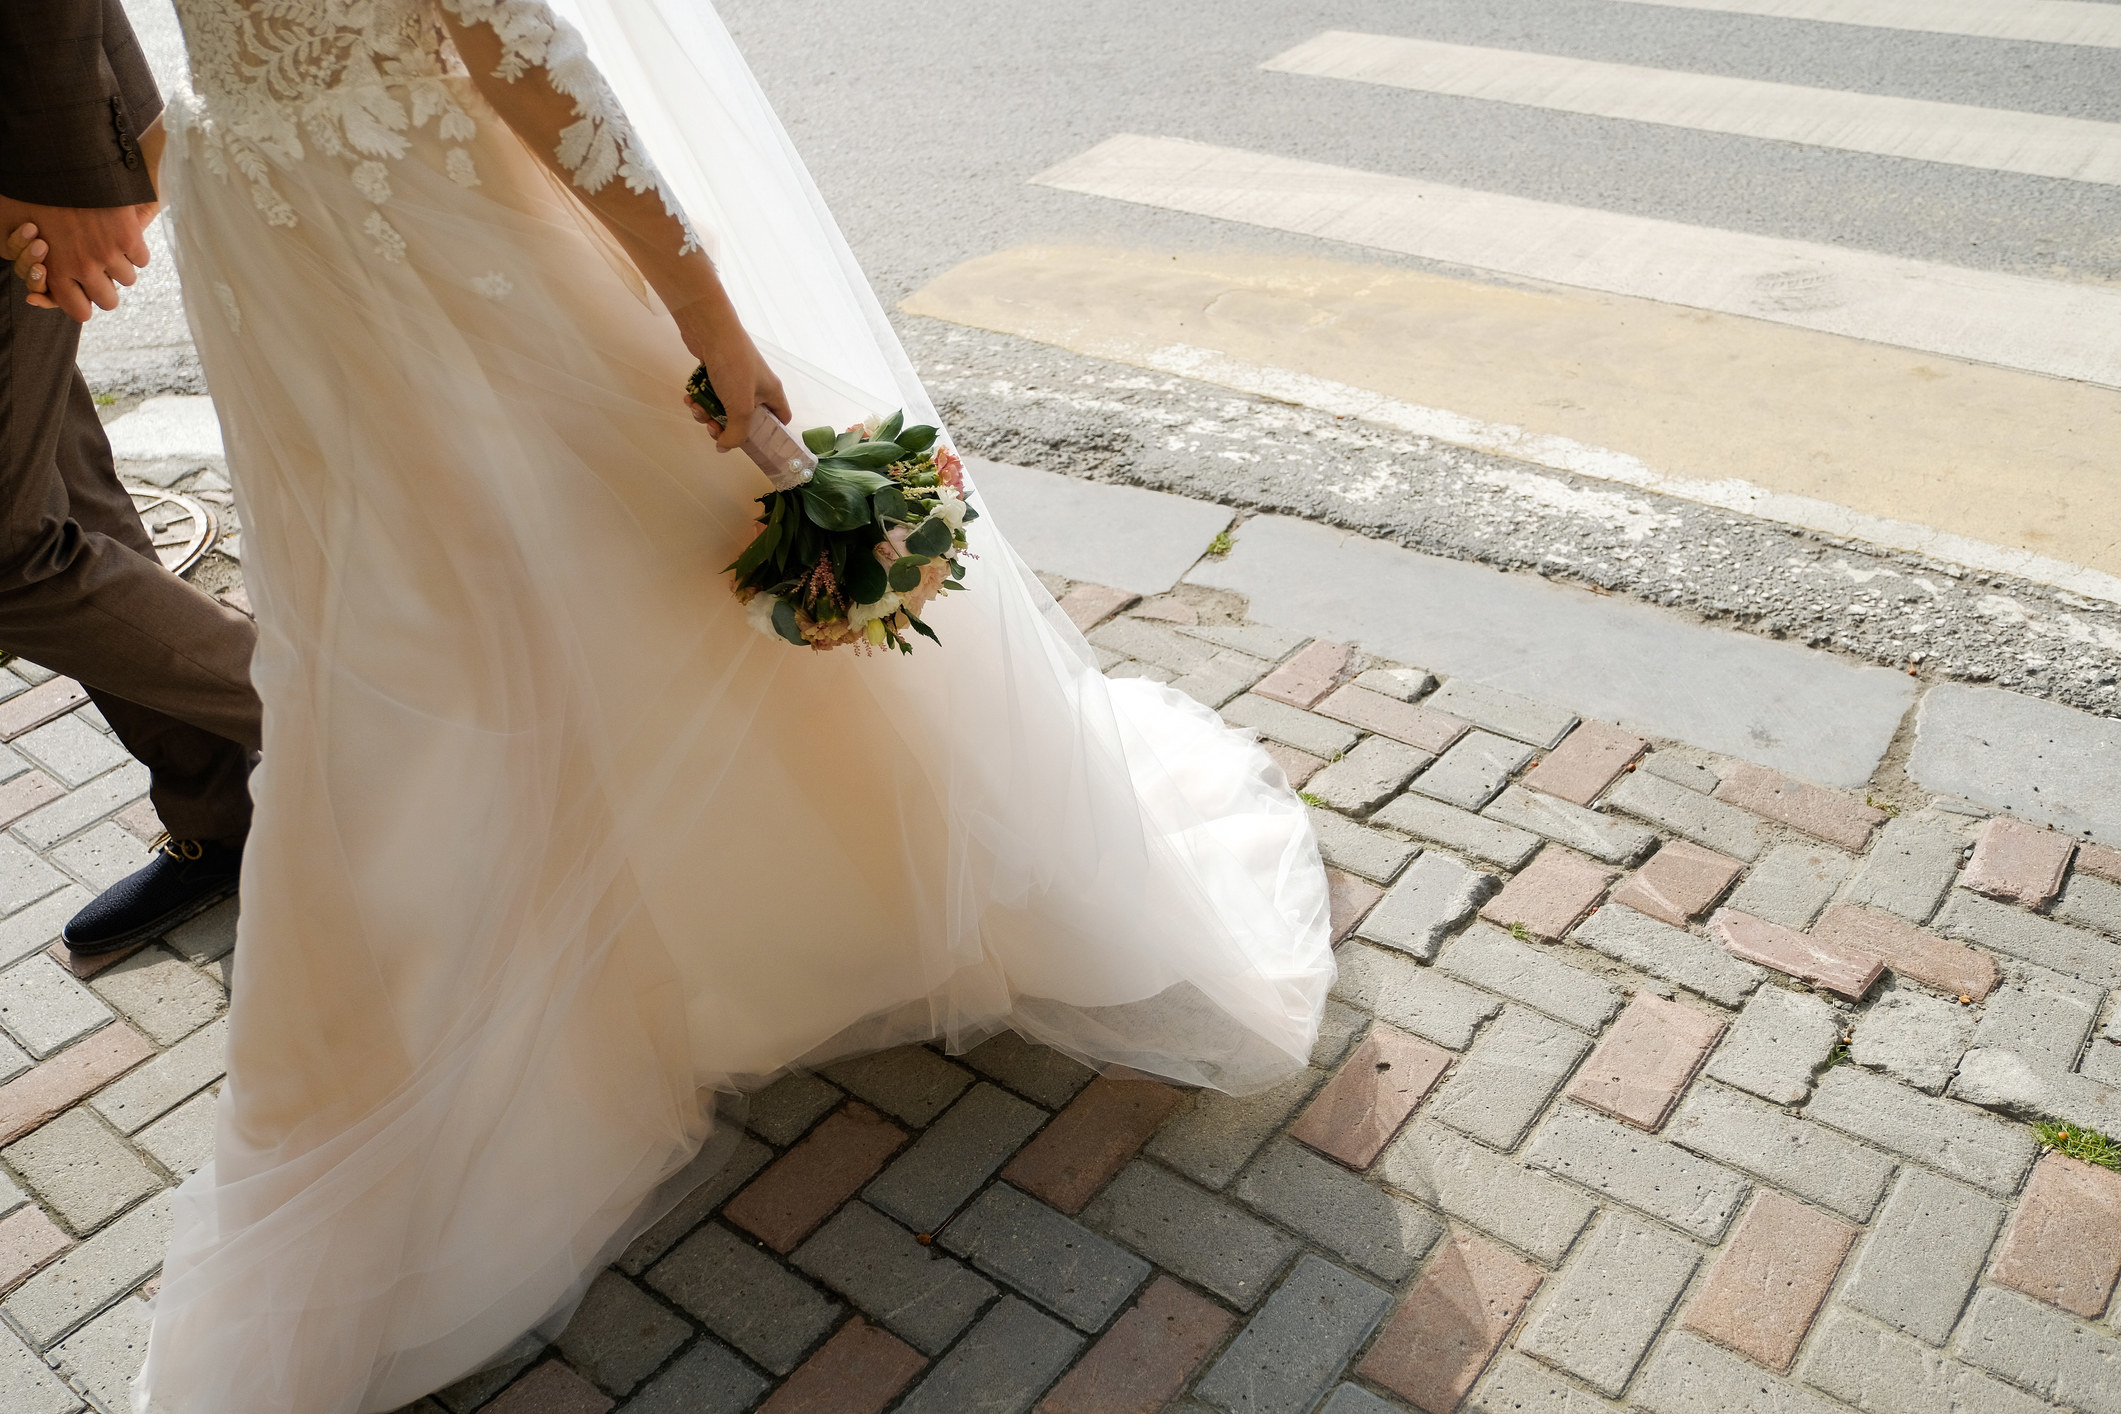 person in a wedding dress walking outside